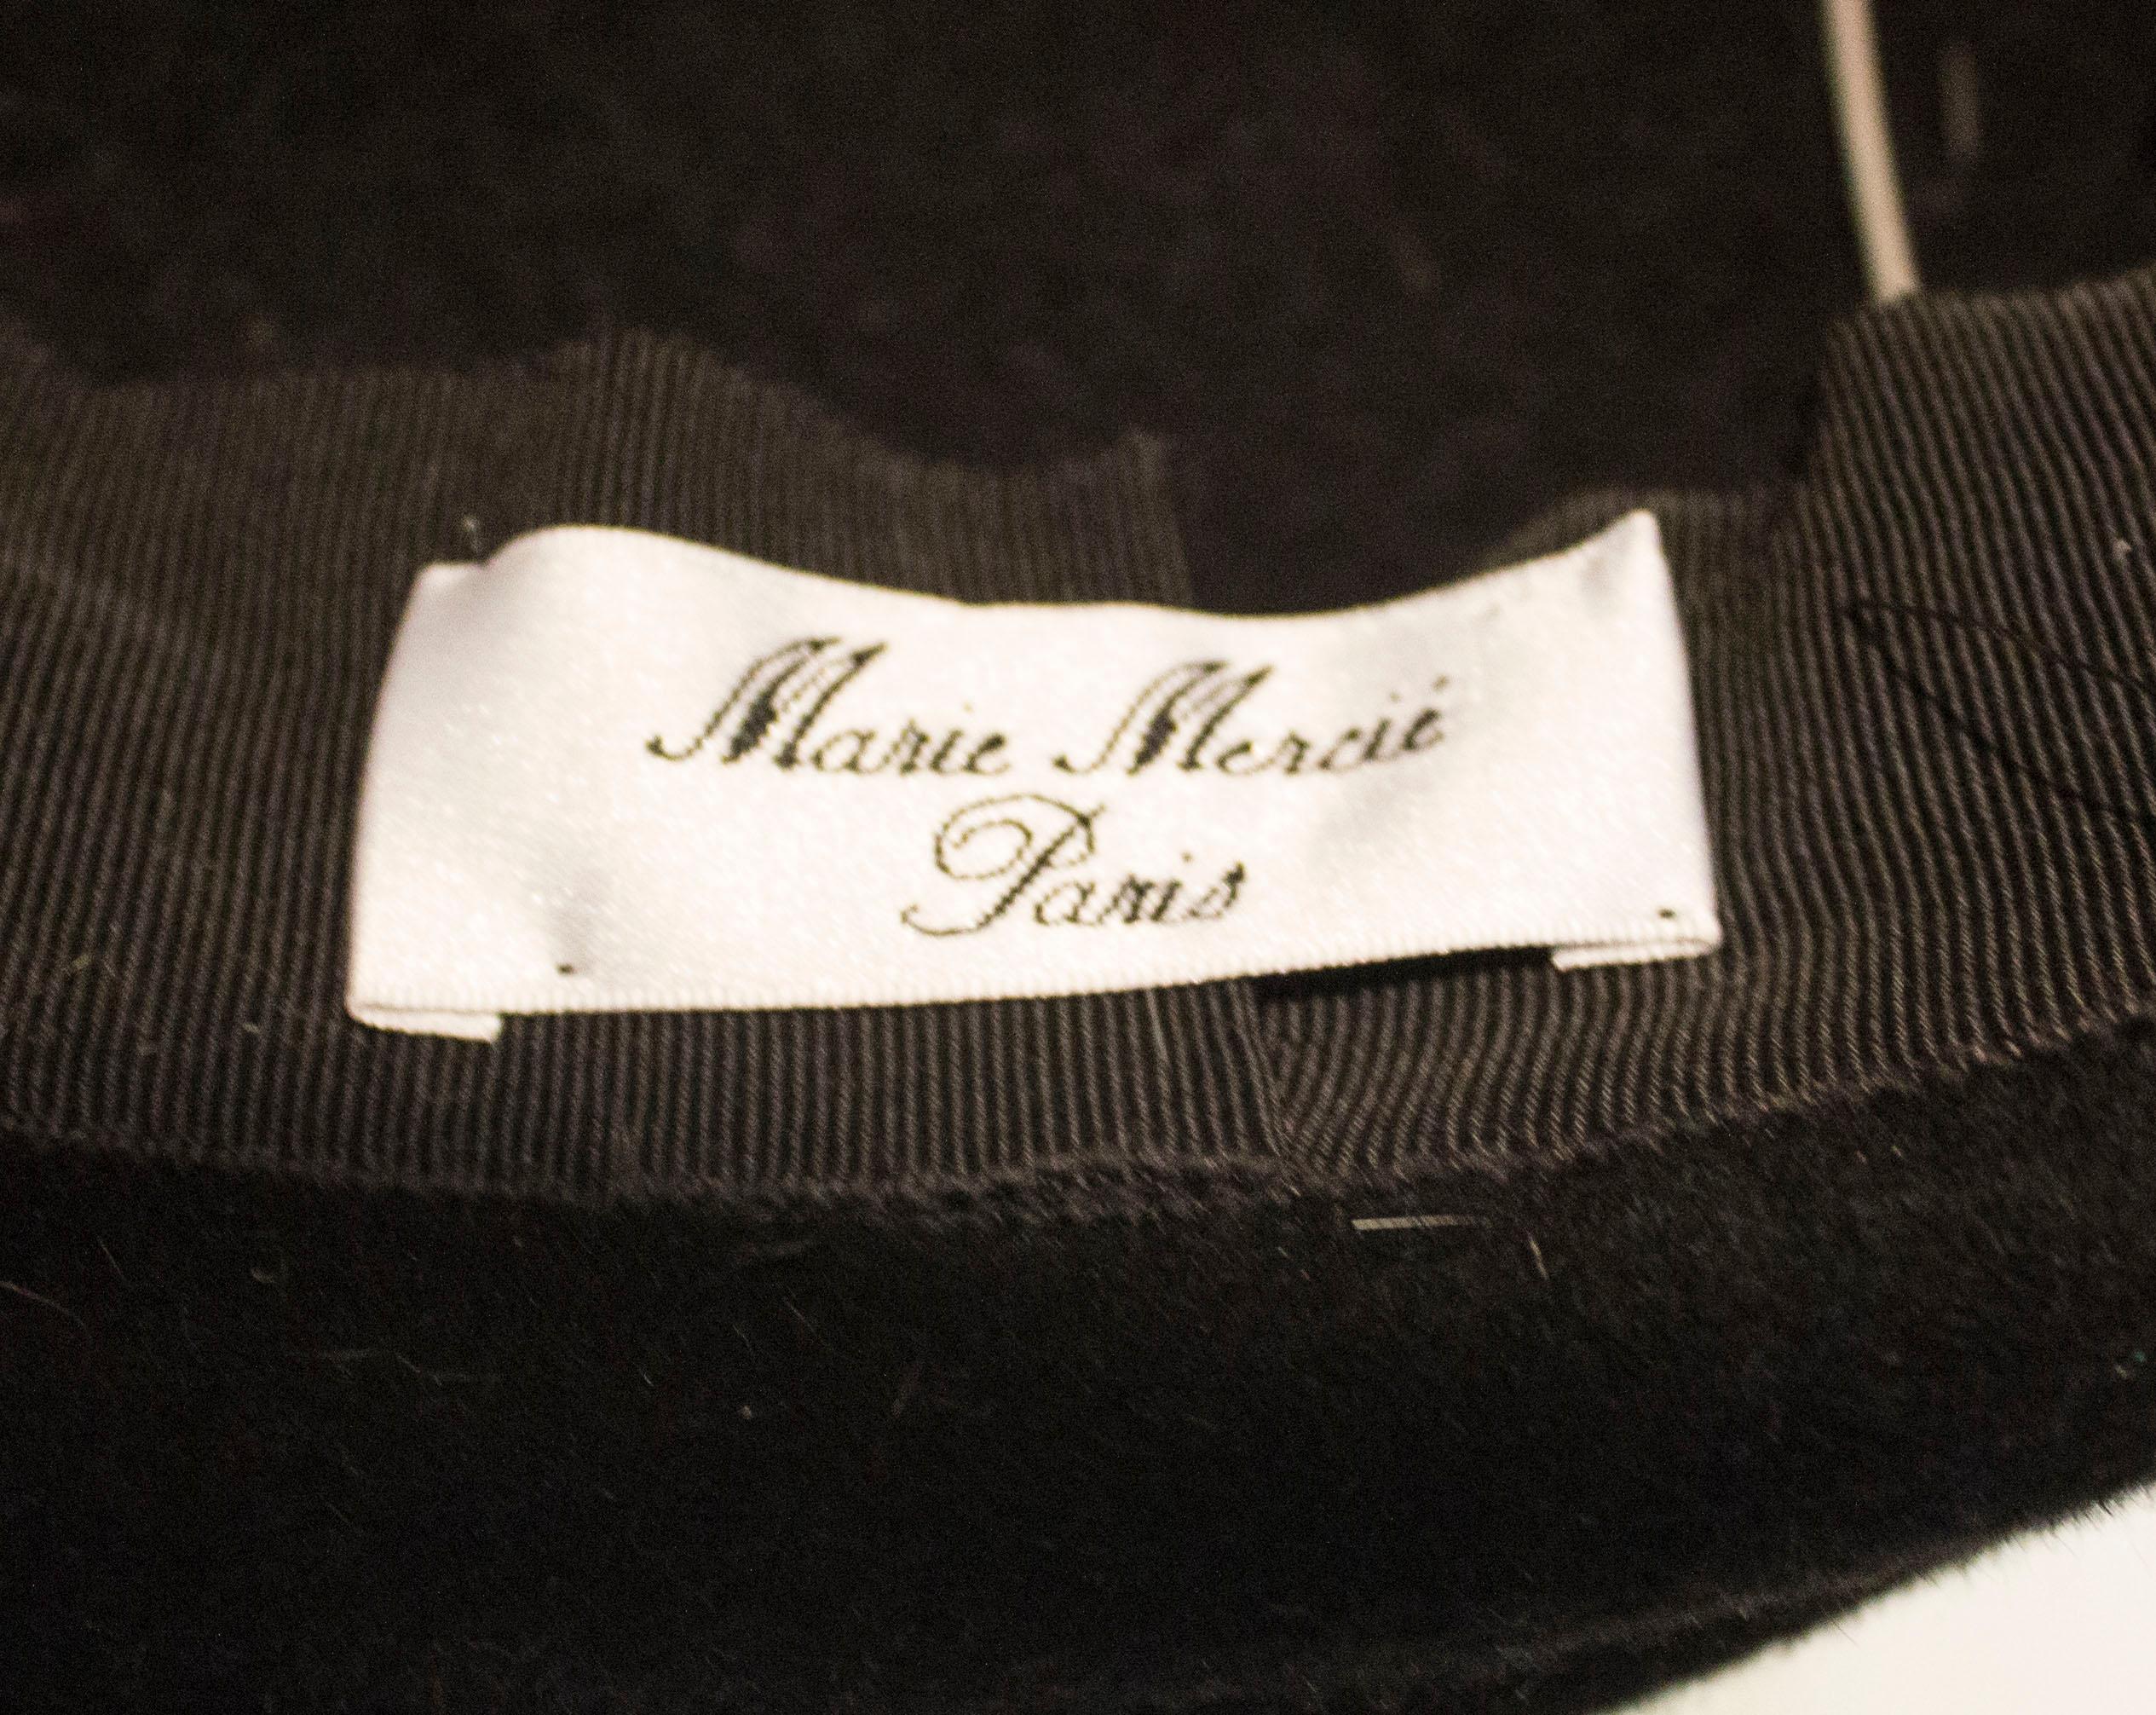 Gray Vintage Hat by Marie Mercie Paris